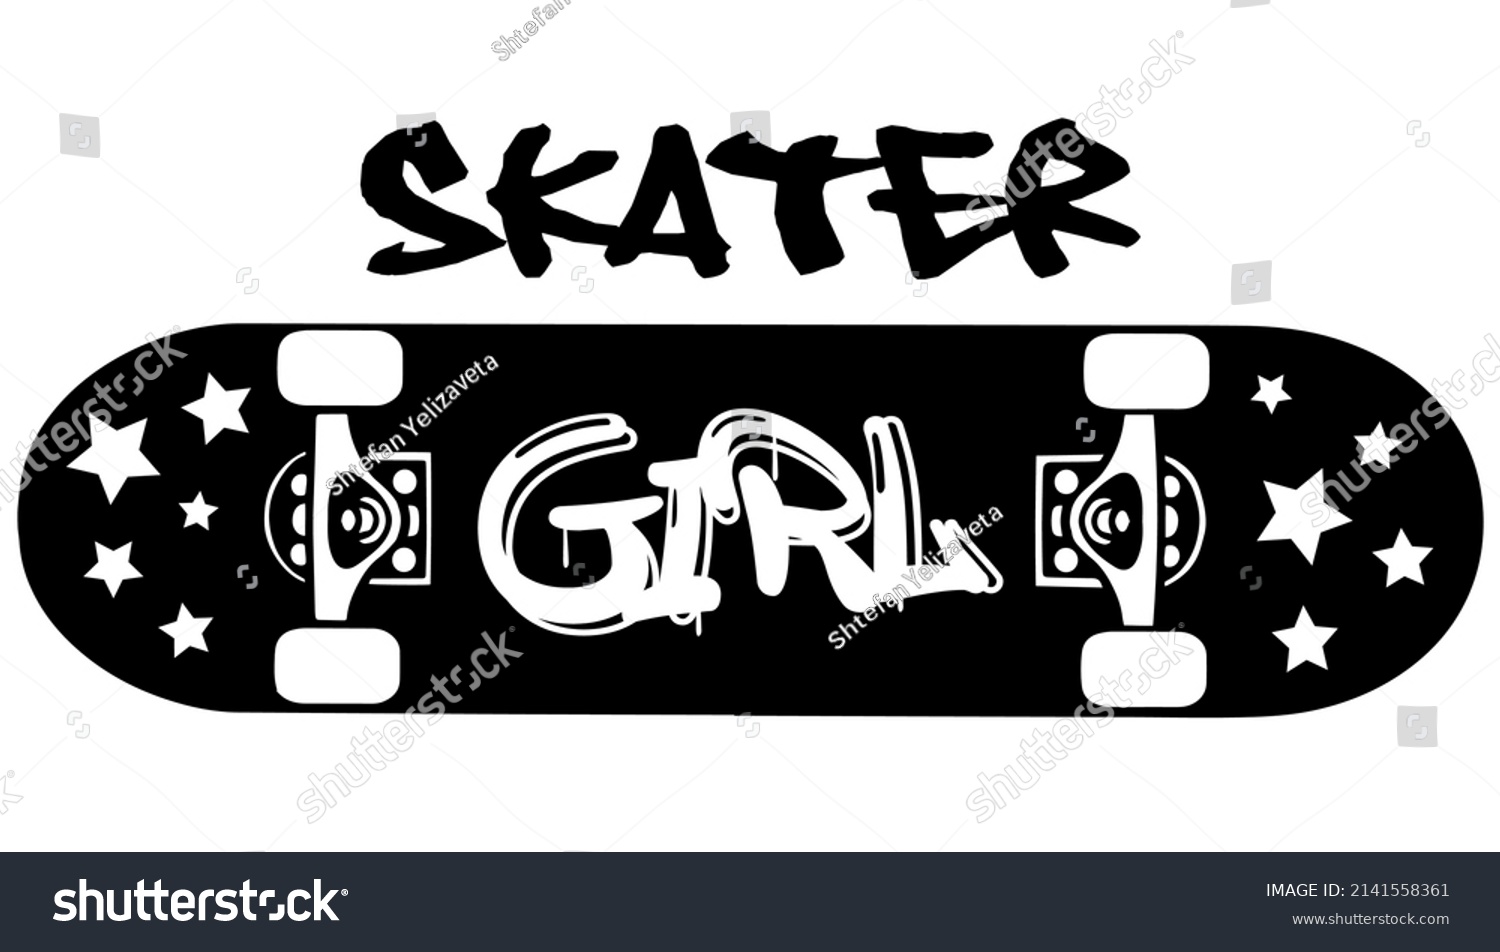 SVG of Skateboard skate park vintage logo. Skateboarding retro emblem. Vector illustration.Skateboard vector illustration.T-shirt apparel print design. Scratch board imitation. Black and white hand drawn art svg